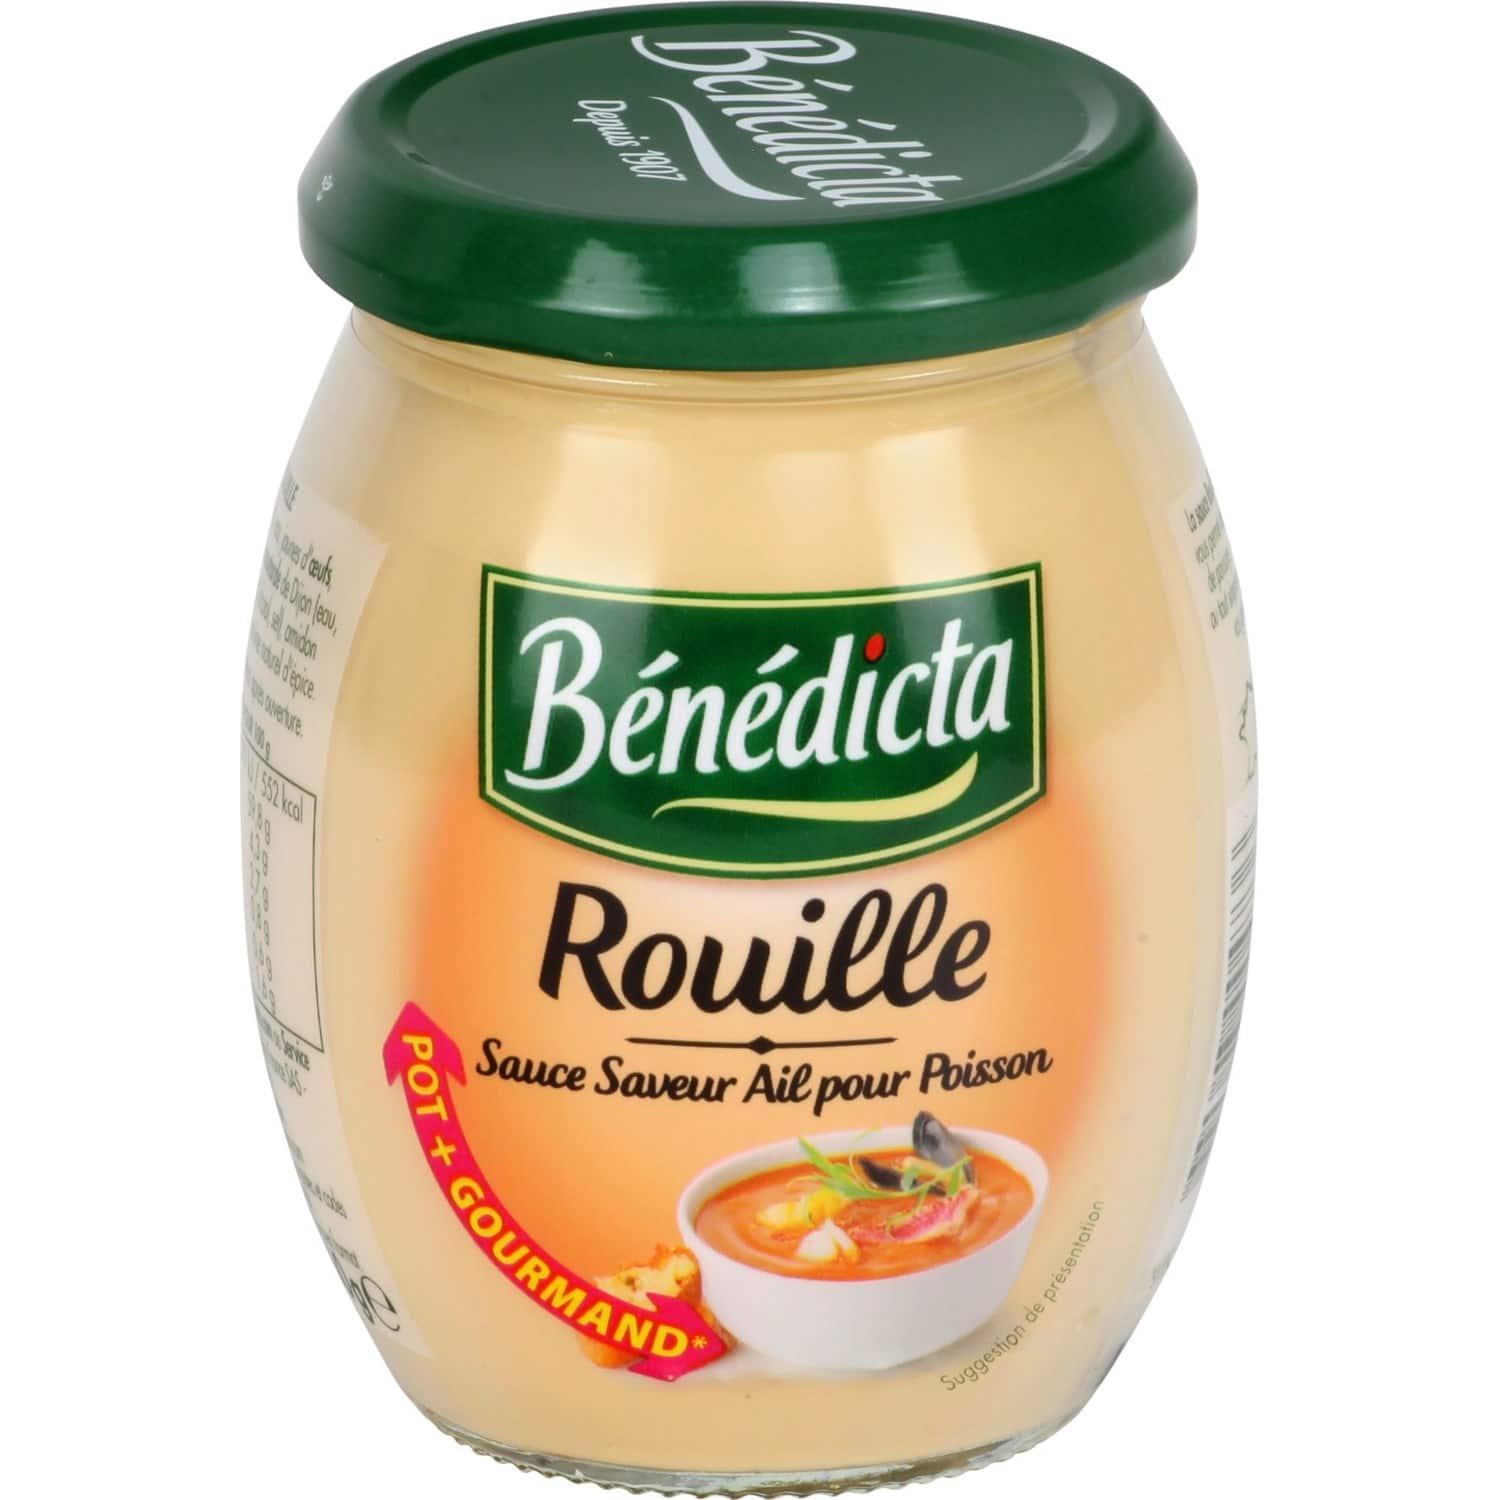 Benedicta Rouille sauce 260g